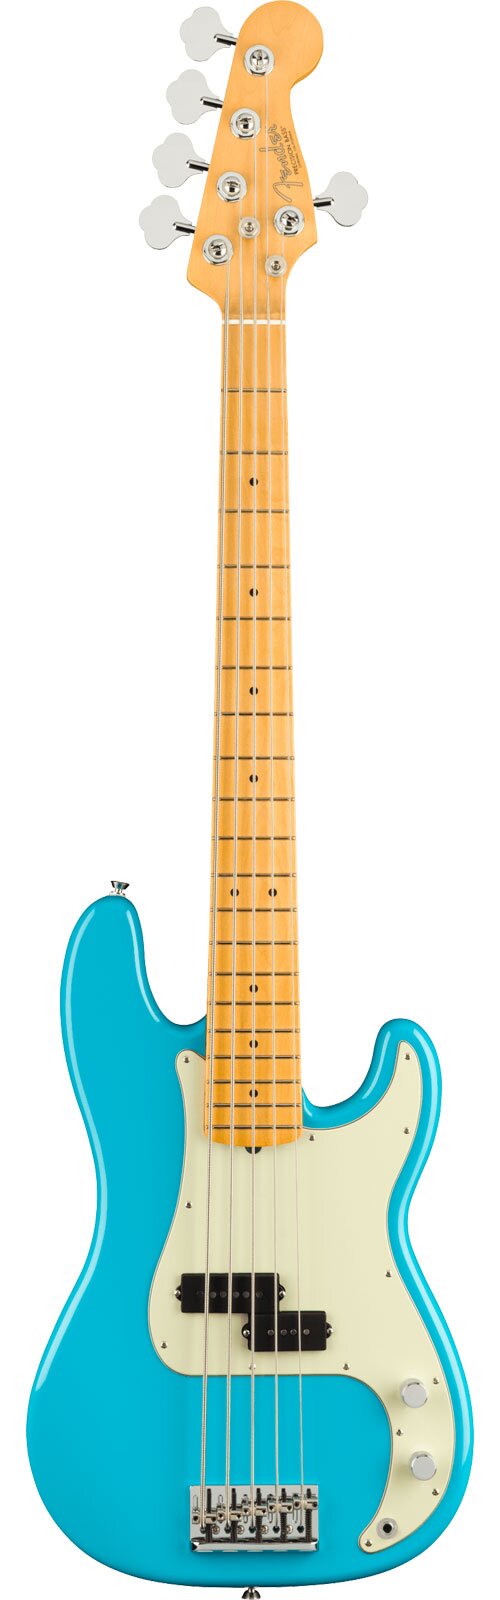 Fender American Professional II Precision Bass V Maple Fingerboard Miami Blue : photo 1